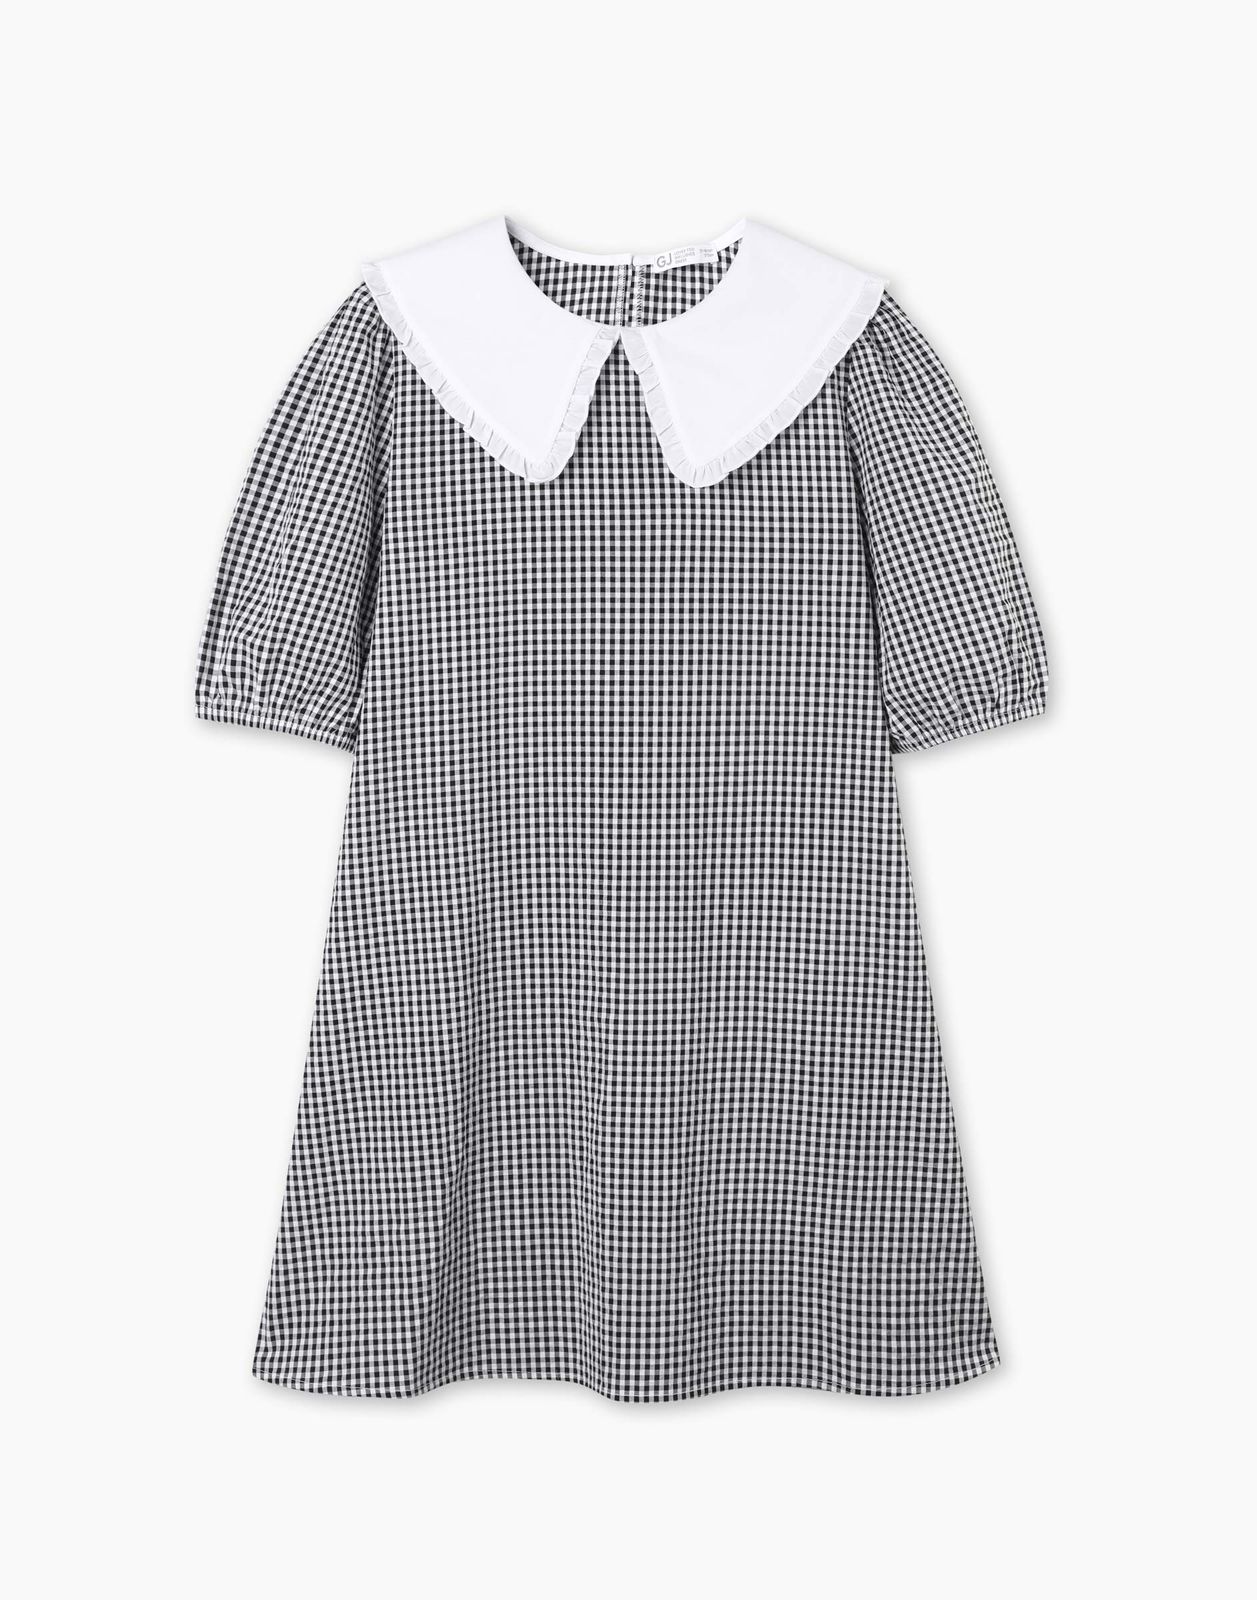 Платье детское Gloria Jeans GDR028214, белый/черный, 152